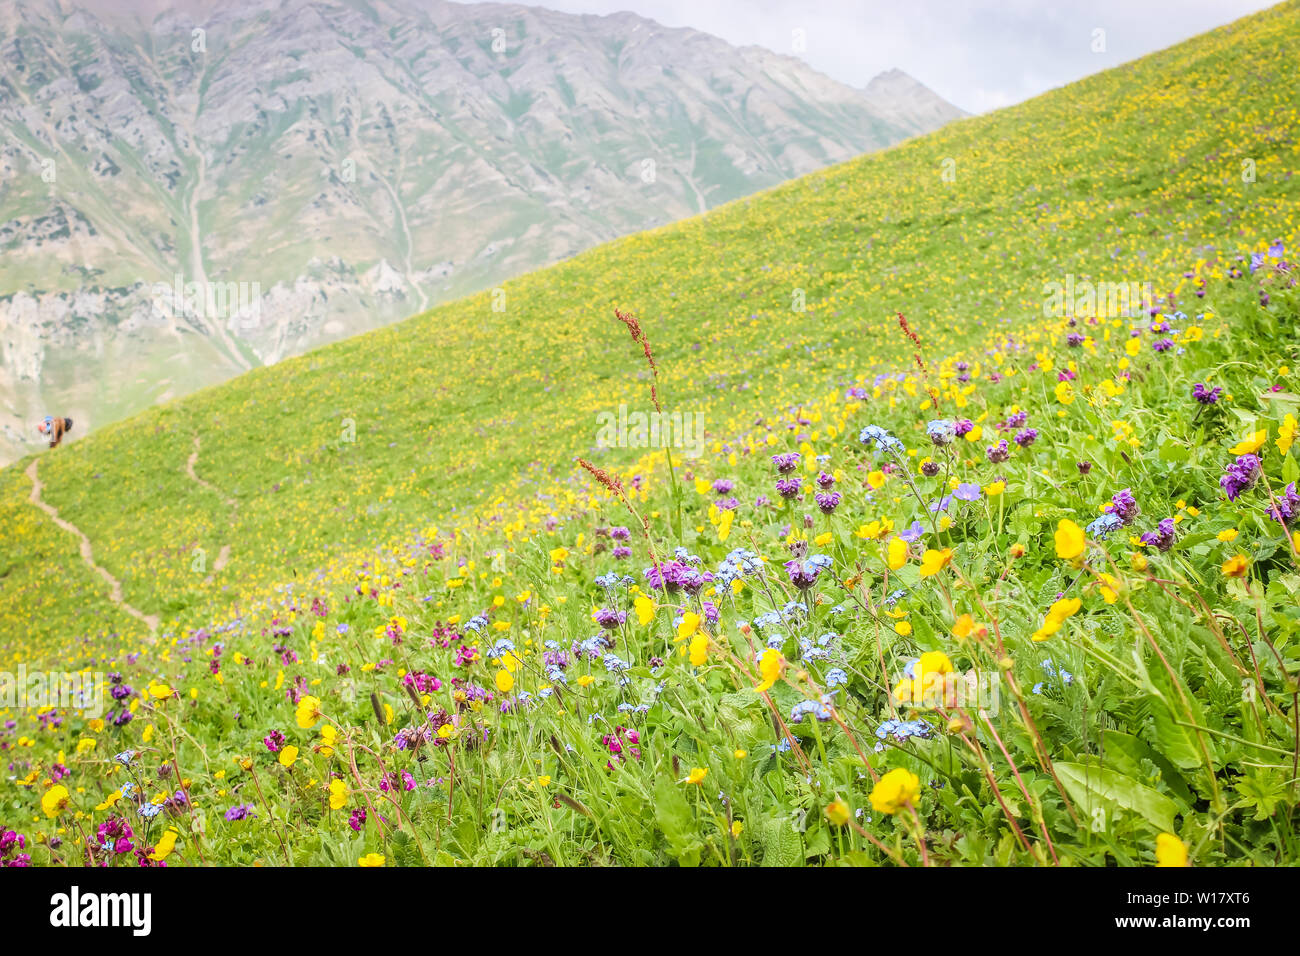 La floraison des fleurs dans les prairies alpines au Cachemire, durant la saison estivale. Banque D'Images